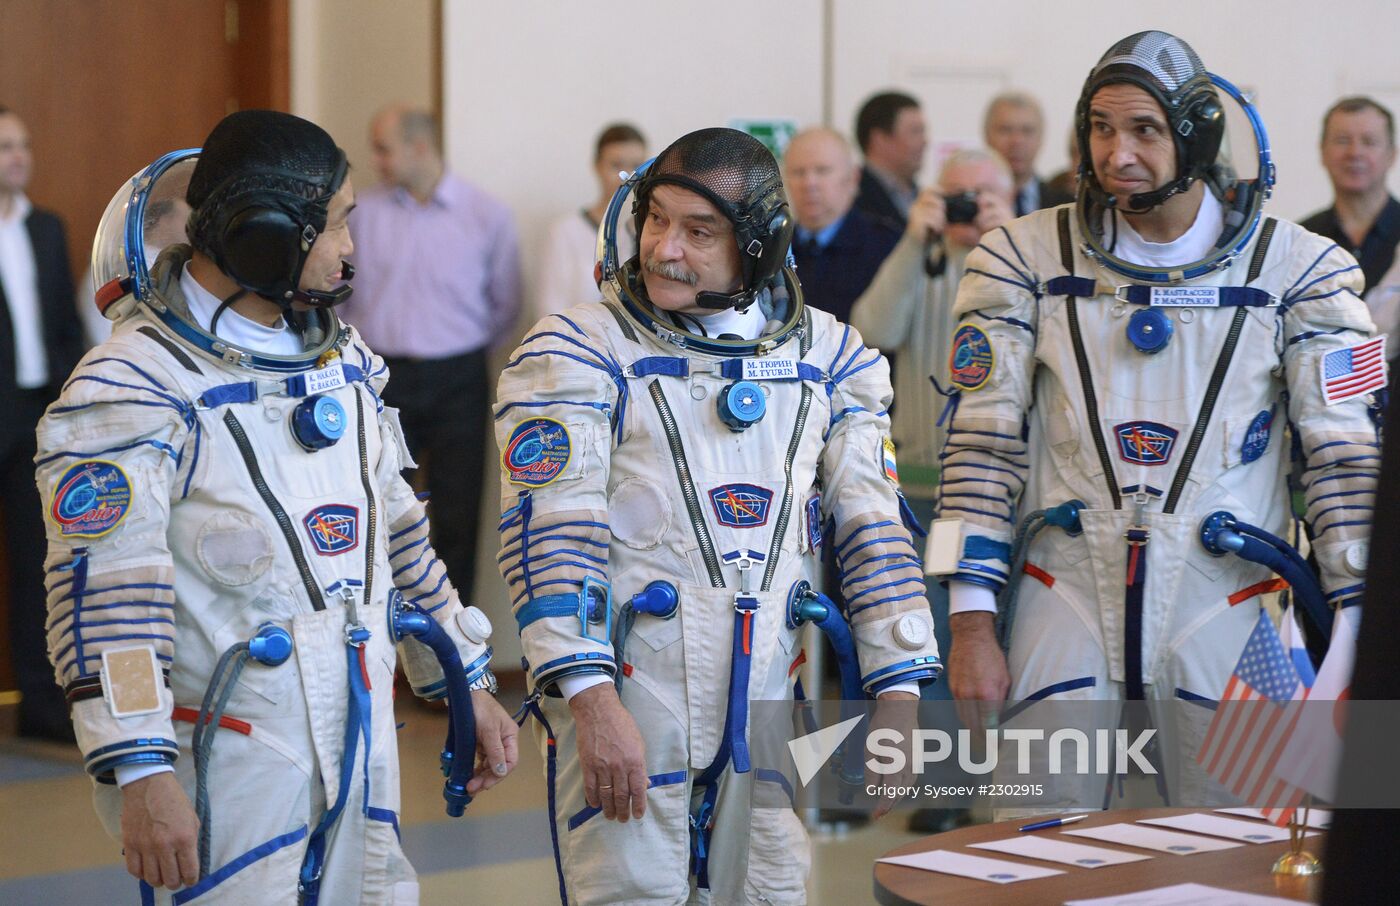 Soyuz TMA-11M manned spacecraft crew